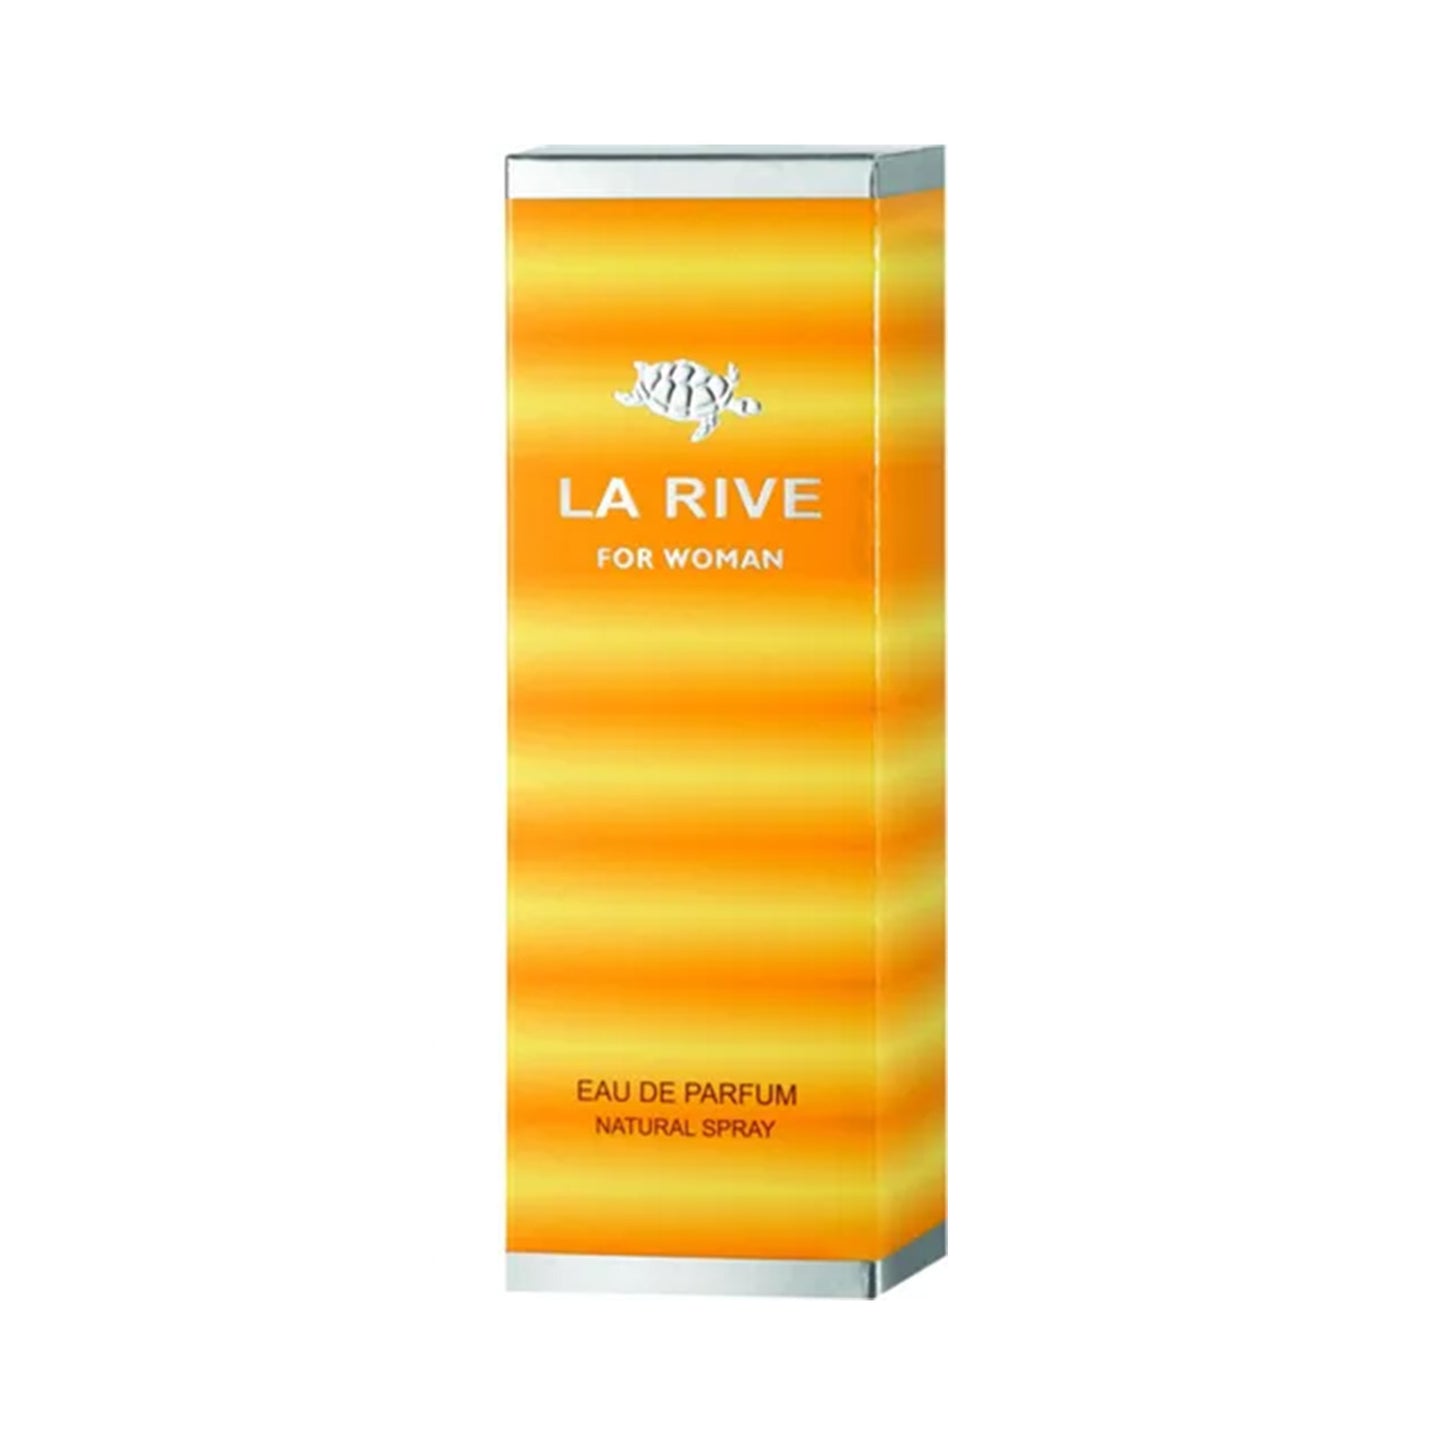 LA RIVE FOR WOMAN EAU DE PARFUM 90ML